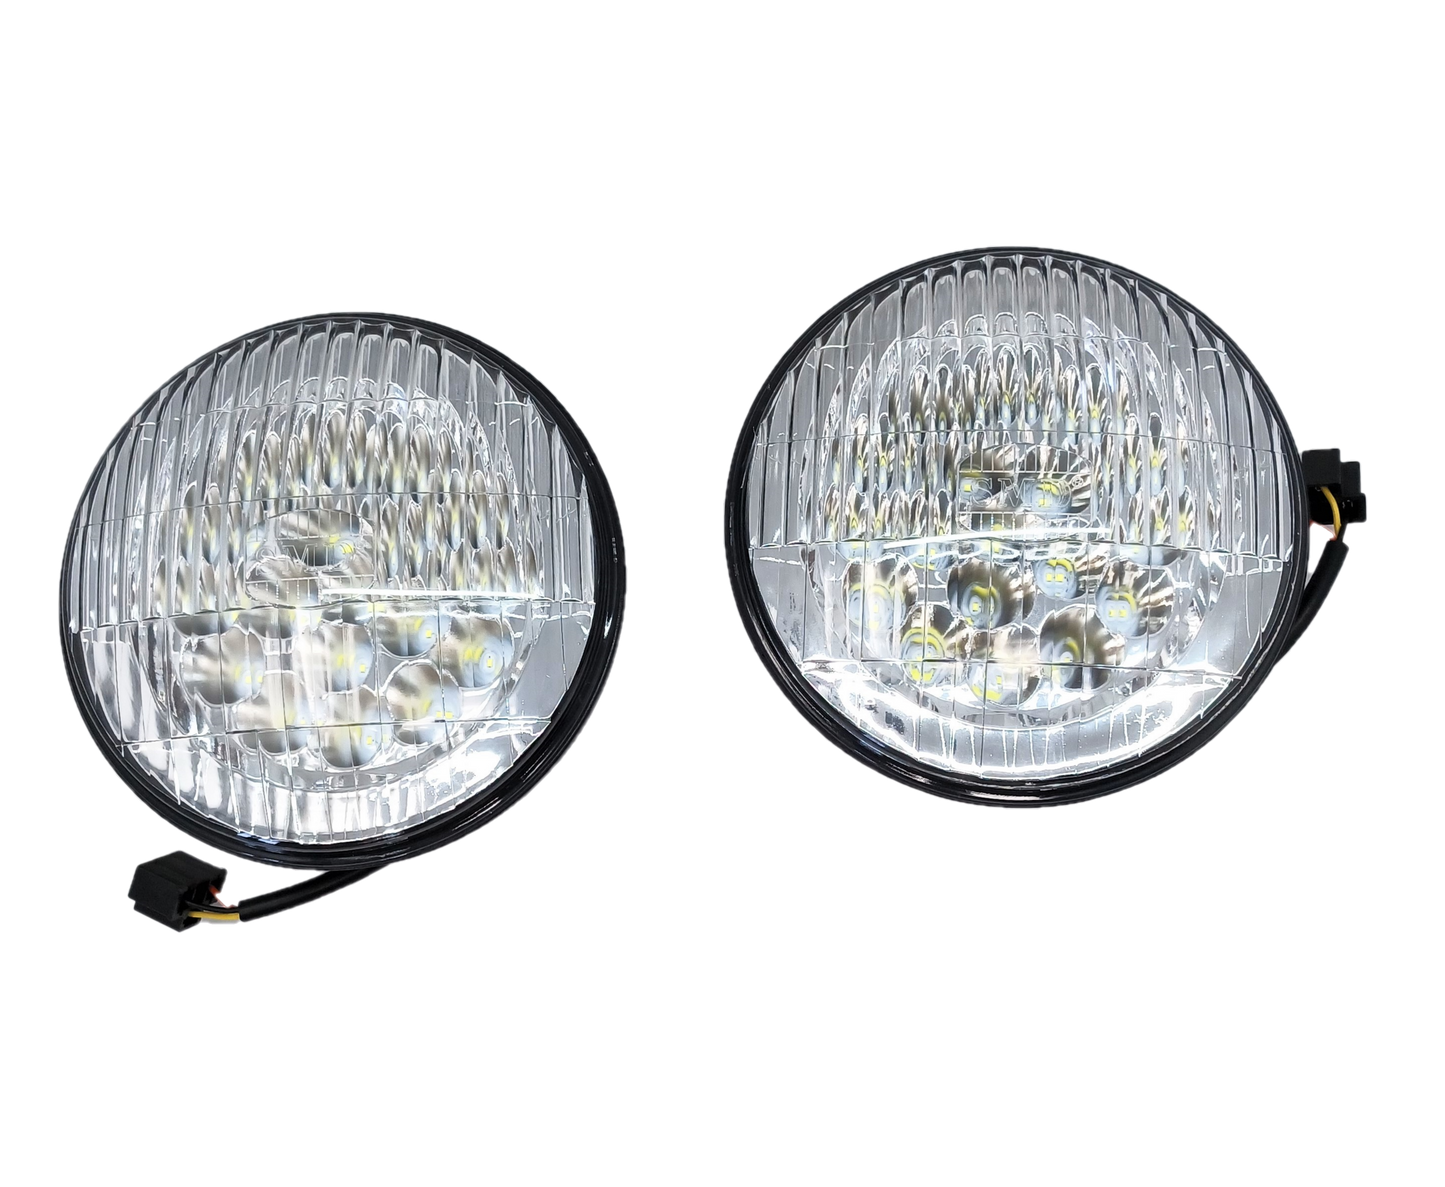 7" Glass lens LED headlight